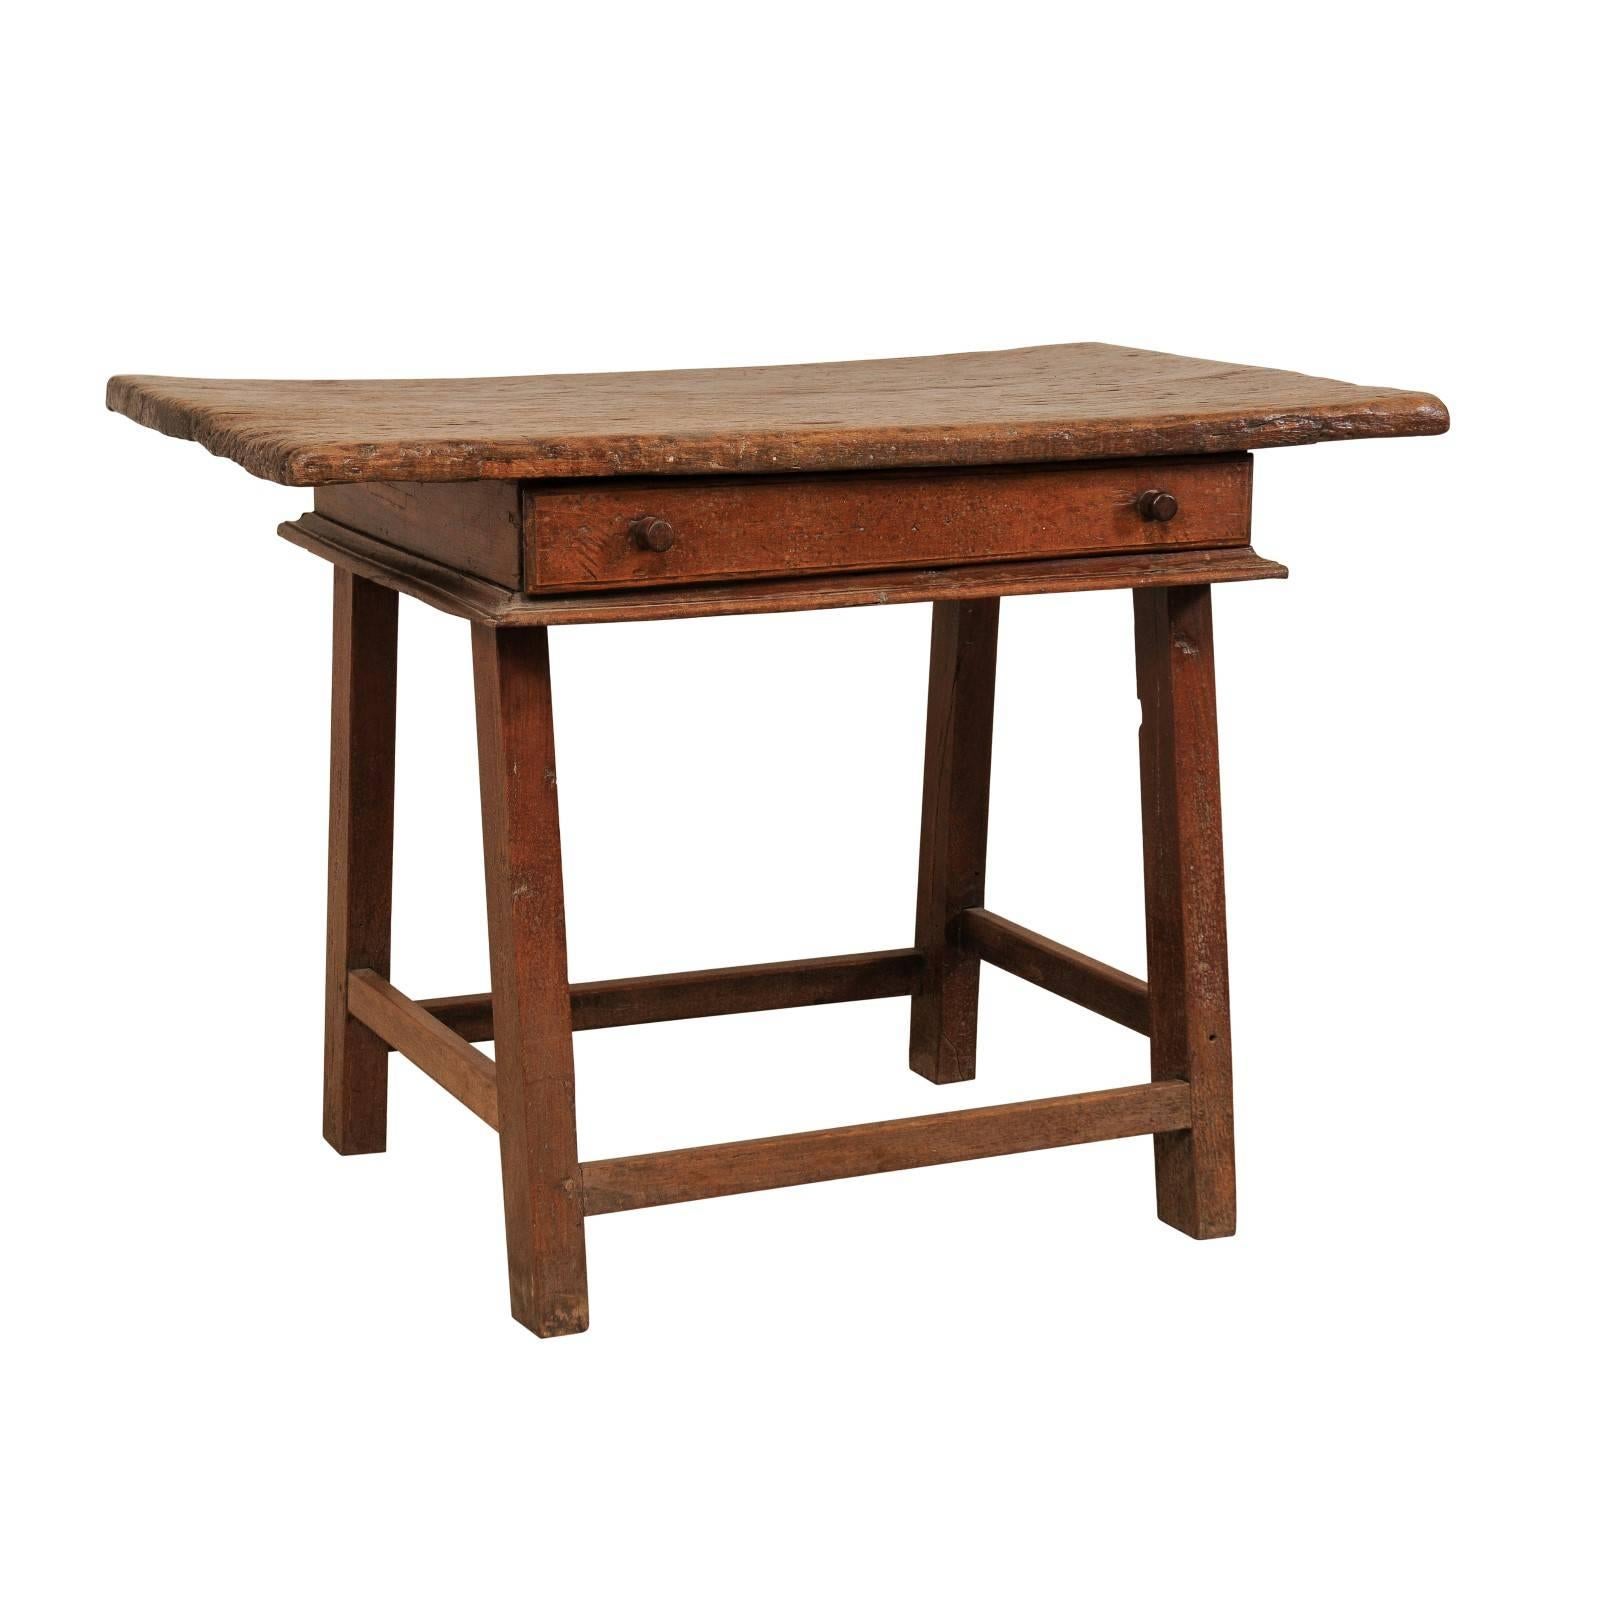 Table d'appoint en bois tropical brésilien Peroba du 18ème siècle avec un seul tiroir